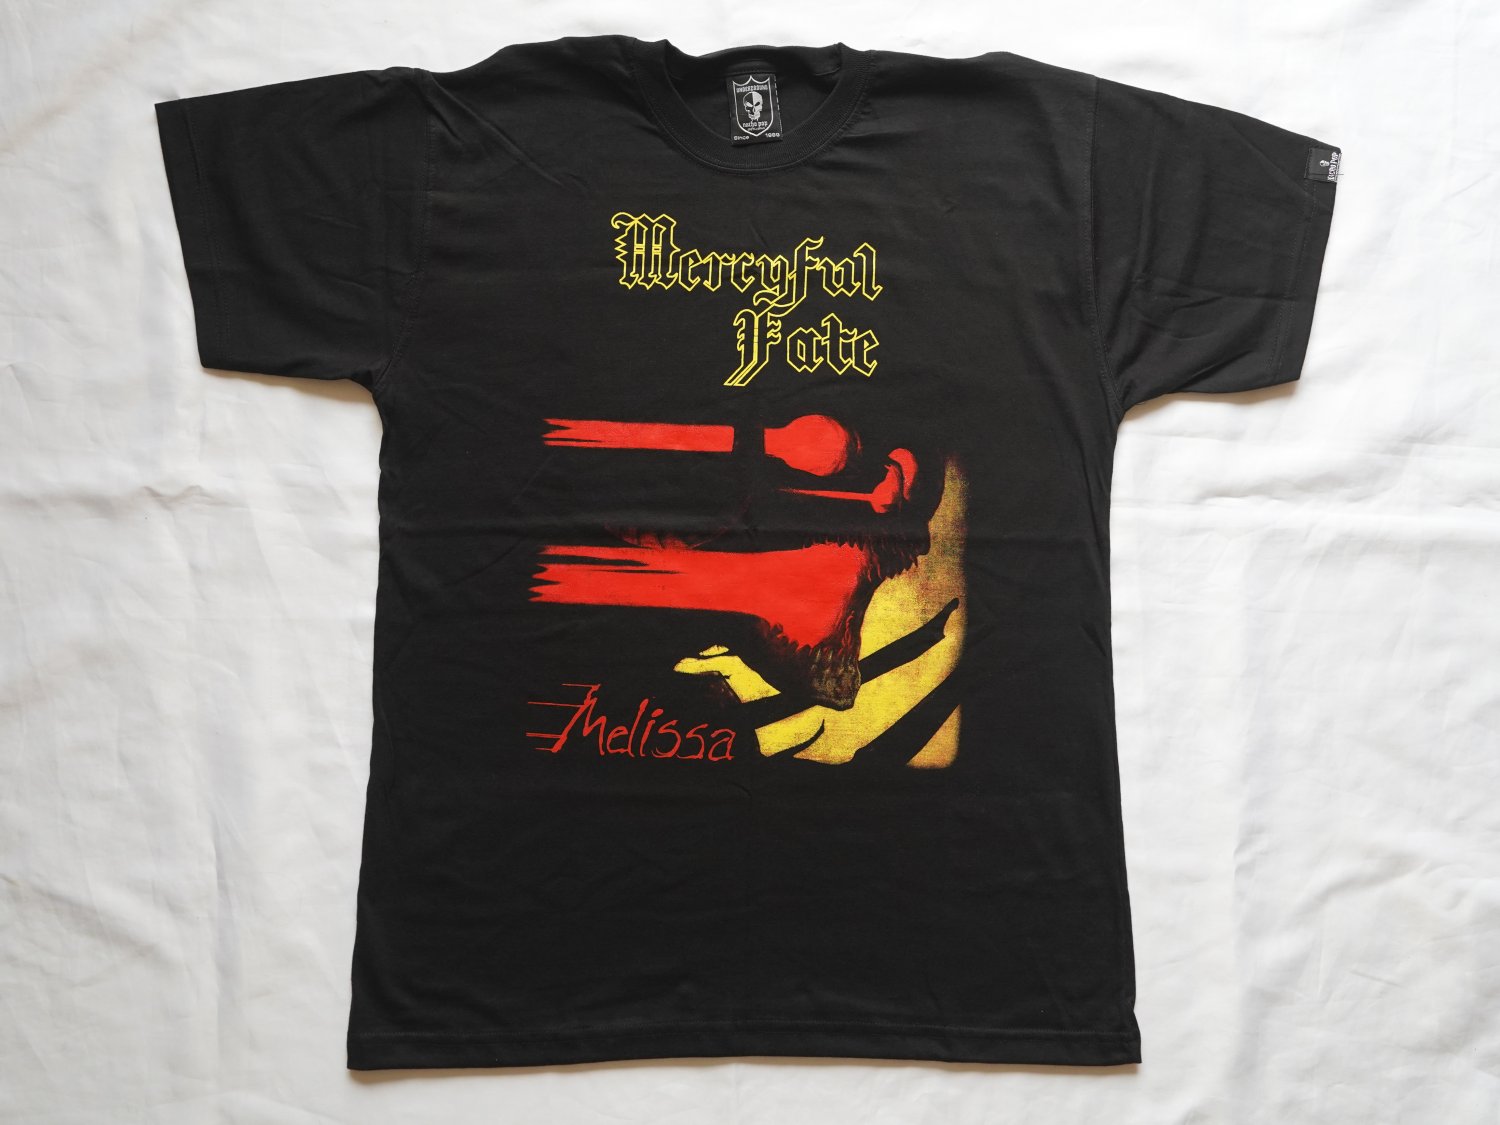 MERCYFUL FATE - Melissa T-shirt Black (L) NEW heavy thrash death metal